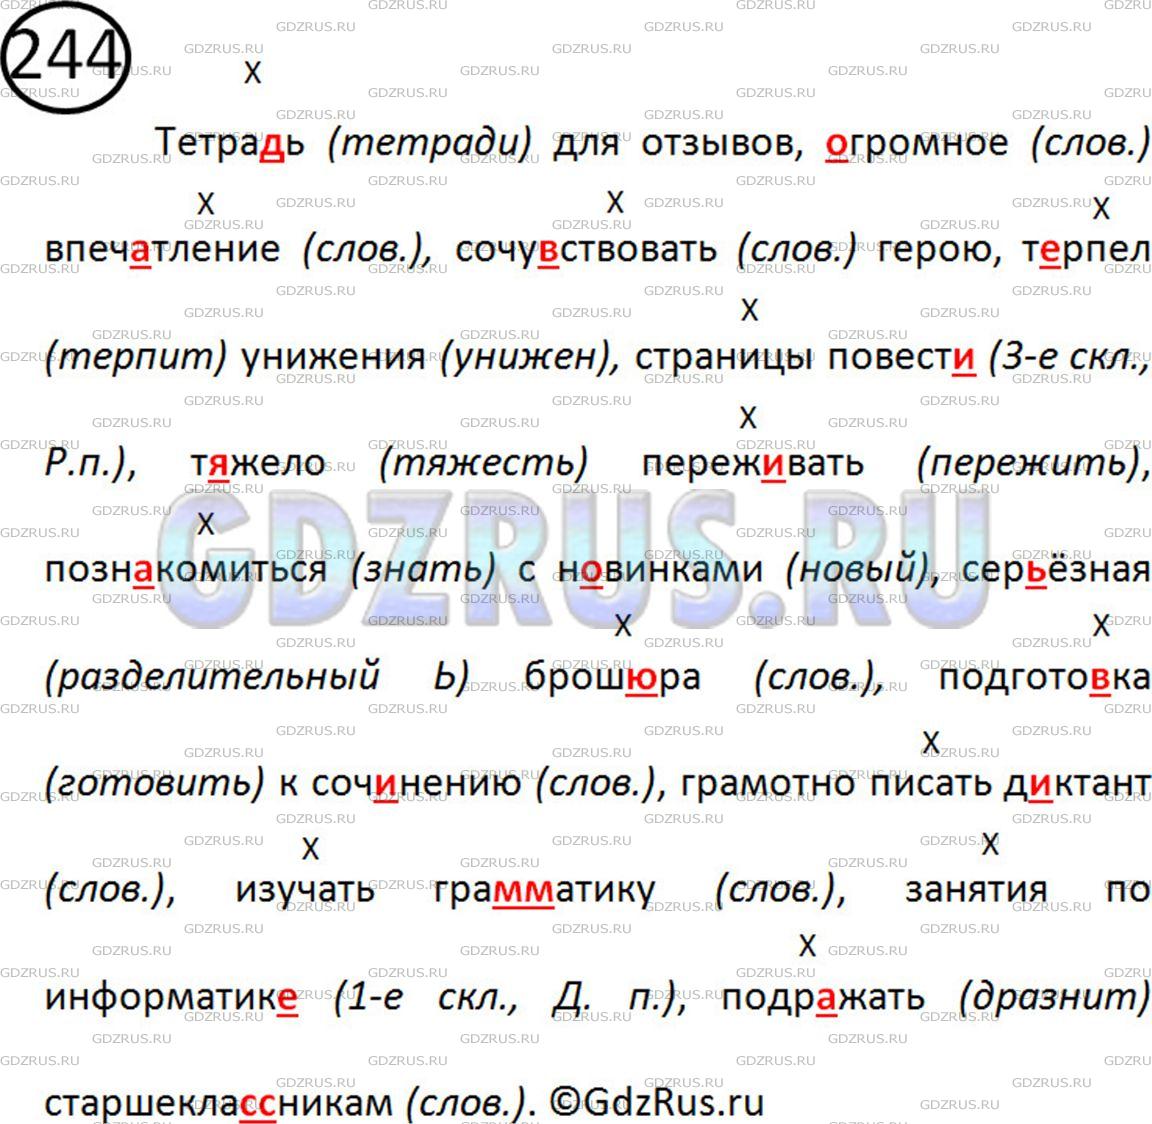 Фото картинка ответа 2: Упражнение № 244 из ГДЗ по Русскому языку 5 класс: Ладыженская